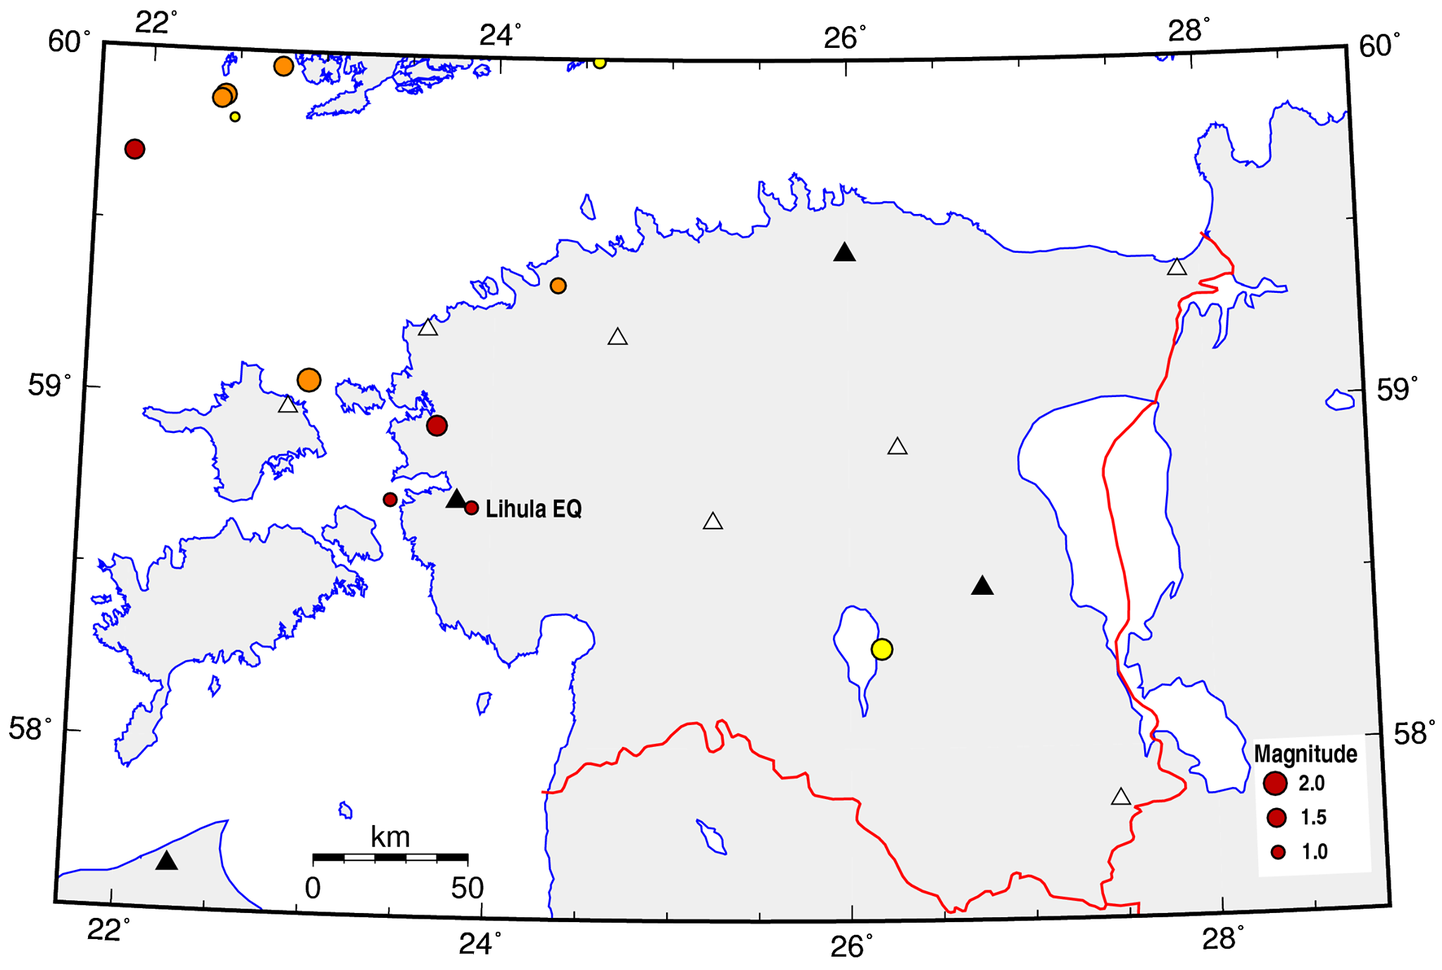 Eesti geoloogiateenistuse andmete järgi registreeriti üleeile lõuna paiku Lihula lähedal tänavu juba kolmas maavärin, mille sügavuseks hinnati 4 kilomeetrit ja magnituudiks 1.